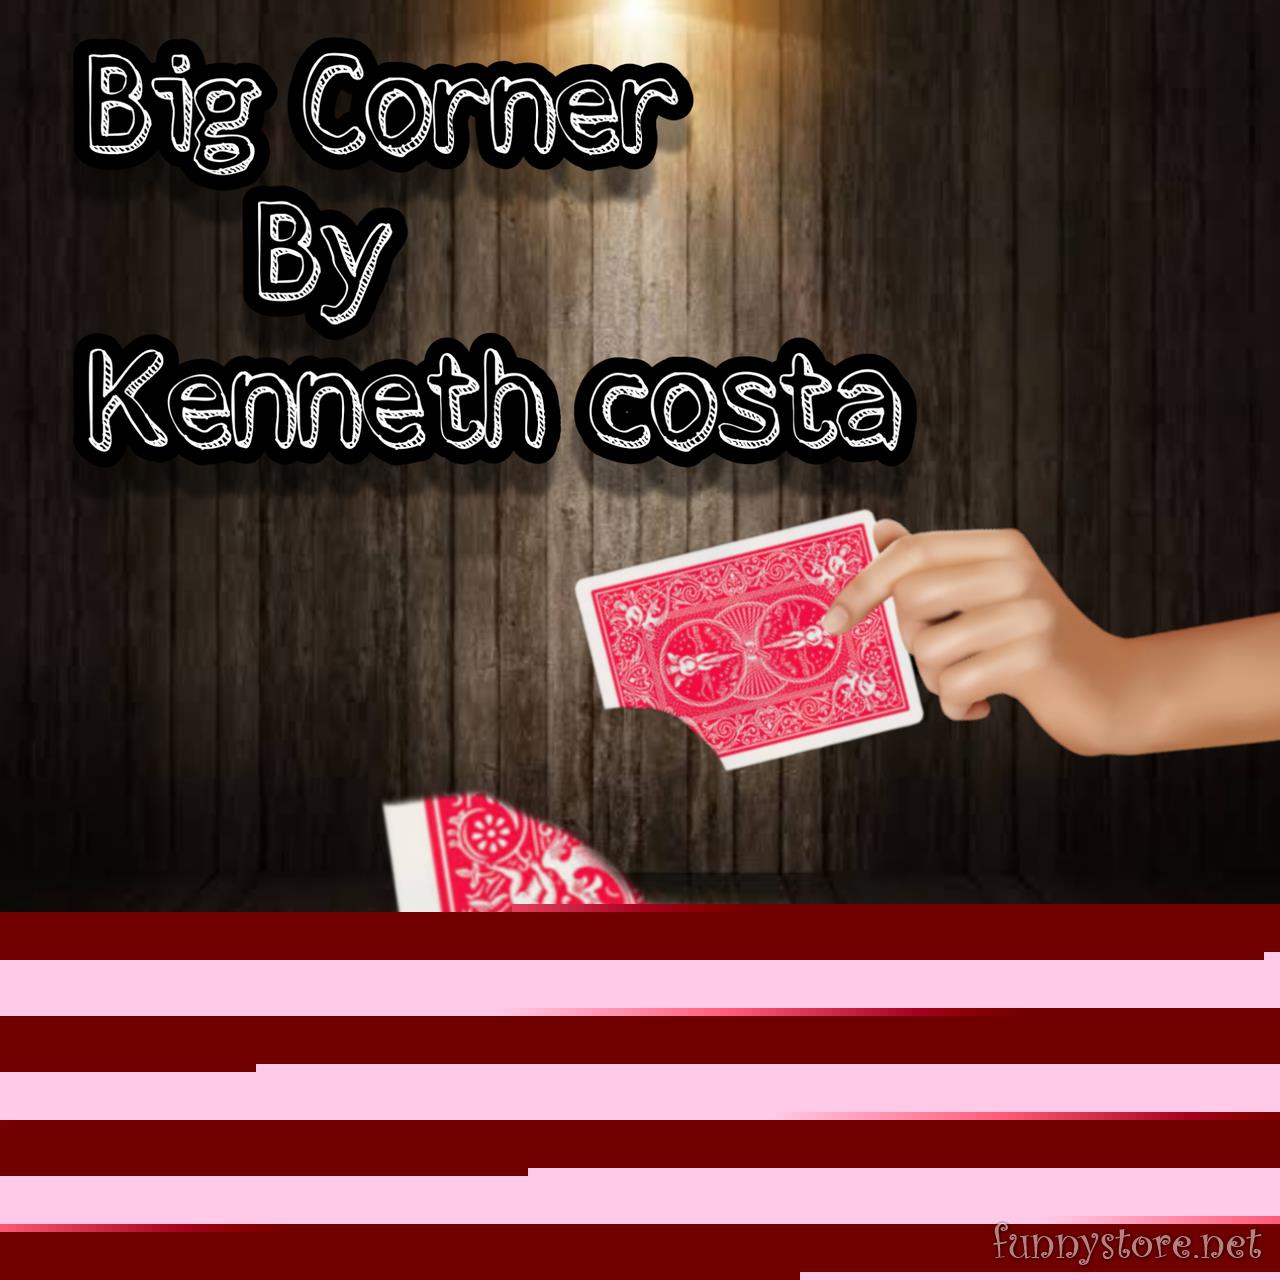 Kenneth Costa - Big Corner